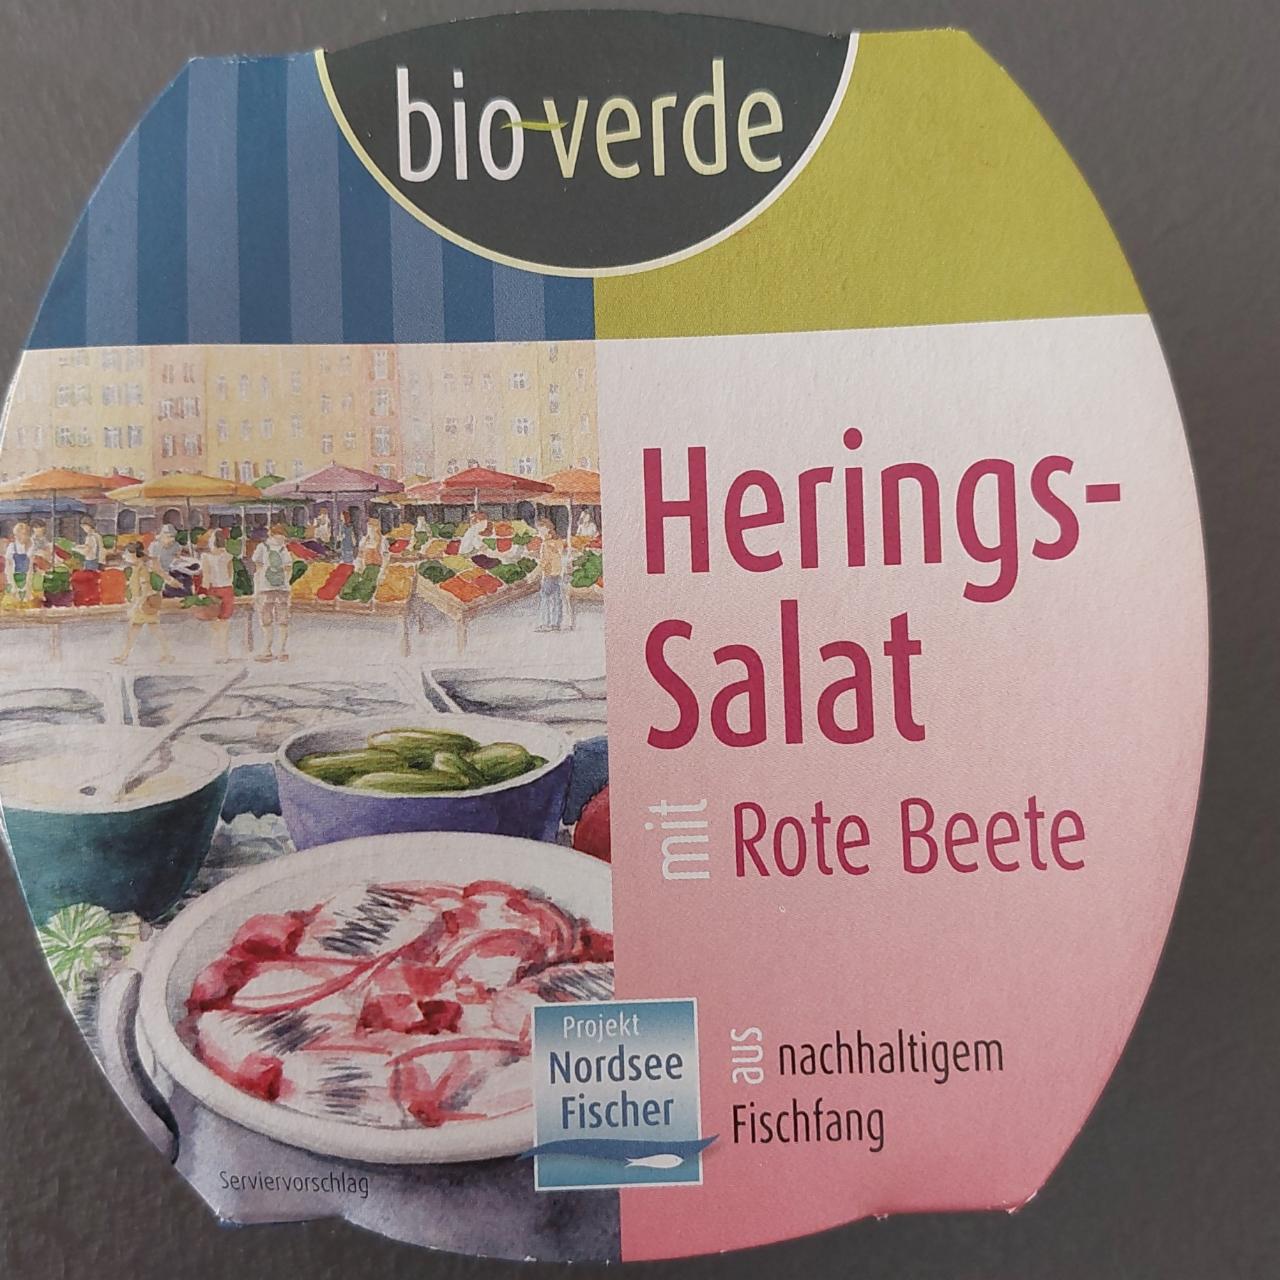 Fotografie - Herings-Salat mit Rote Beete bio verde